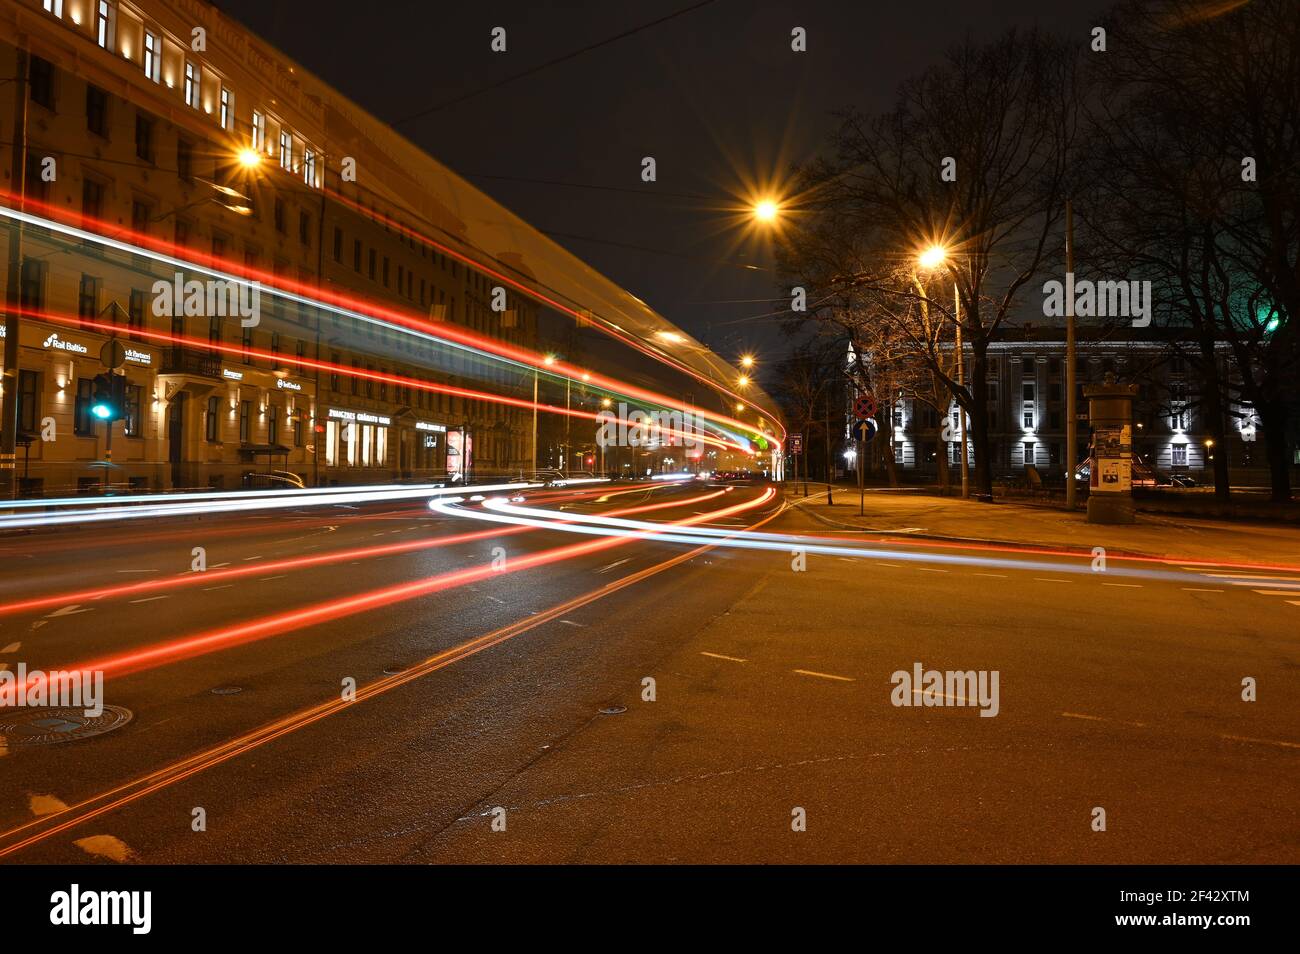 Farbenfrohe, lichtdurchflute Wege in der Stadt bei Nacht, die hoch von der Straße geht, wenn der Bus vorbeifährt. Stockfoto